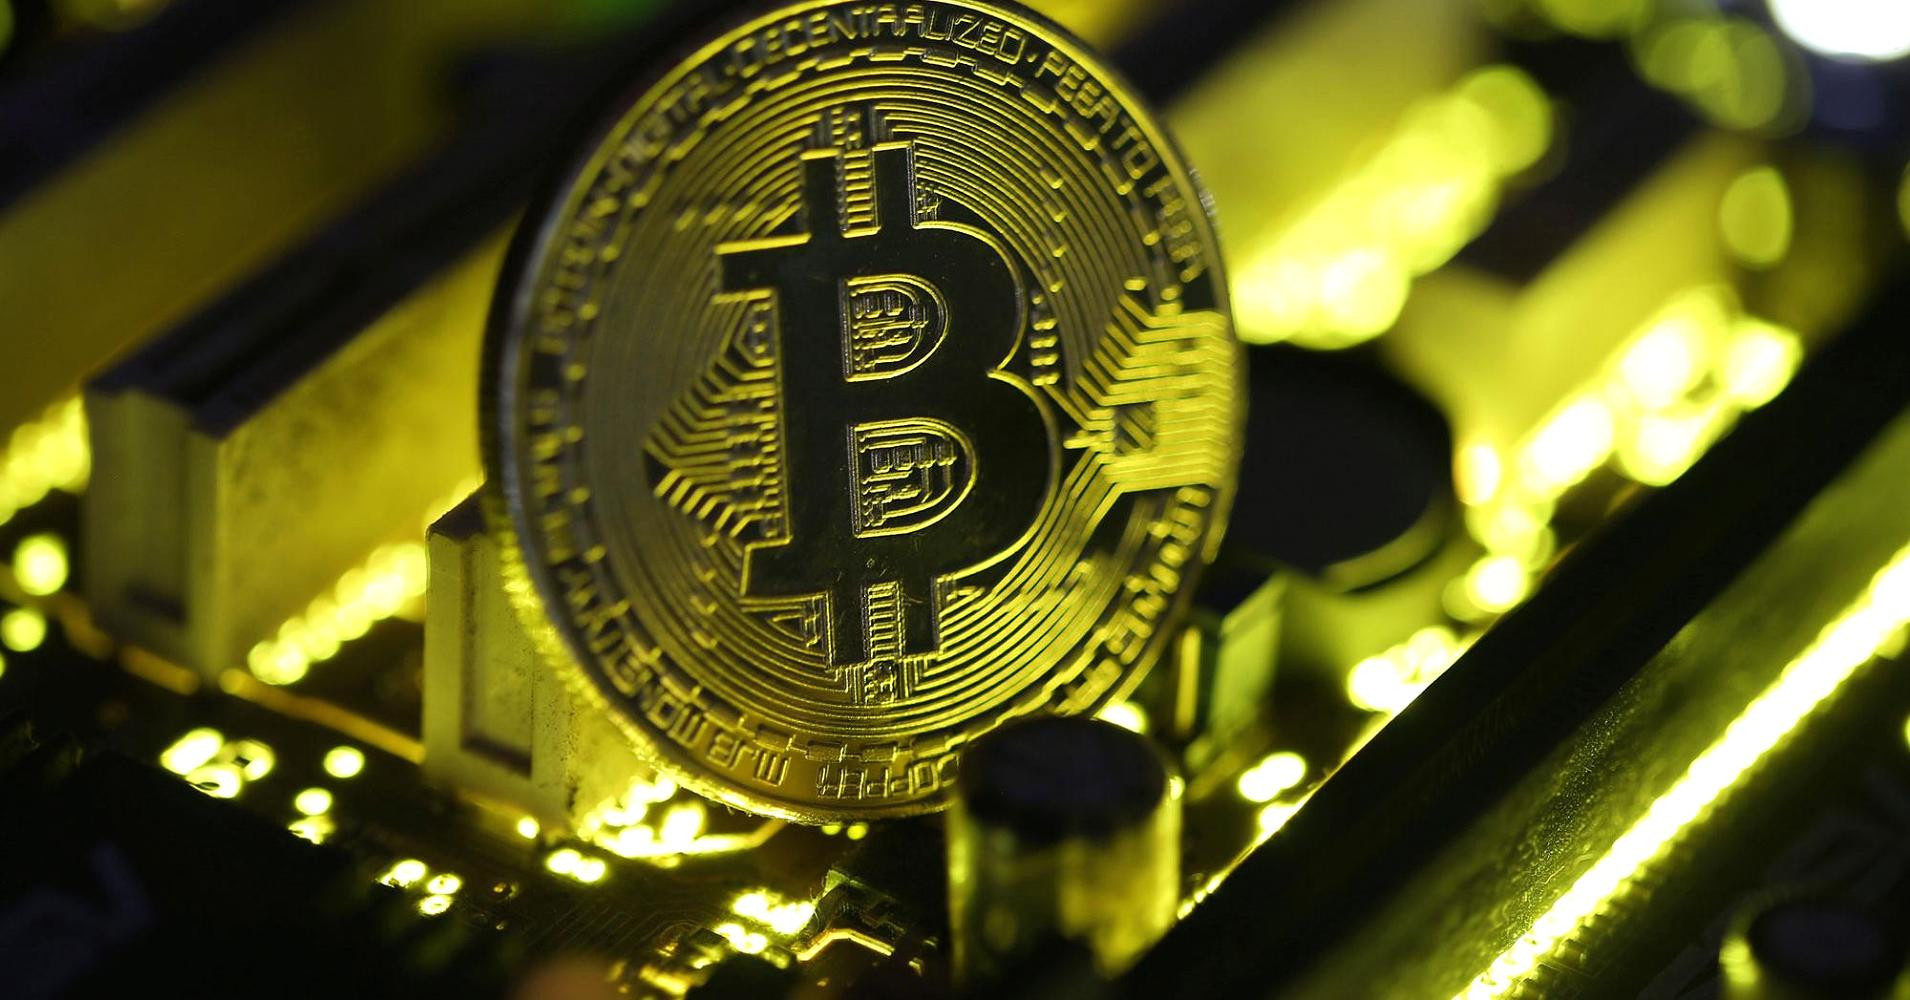 H Black Friday εκτόξευσε το Bitcoin – Νέο ιστορικό ρεκόρ για το ψηφιακό νόμισμα